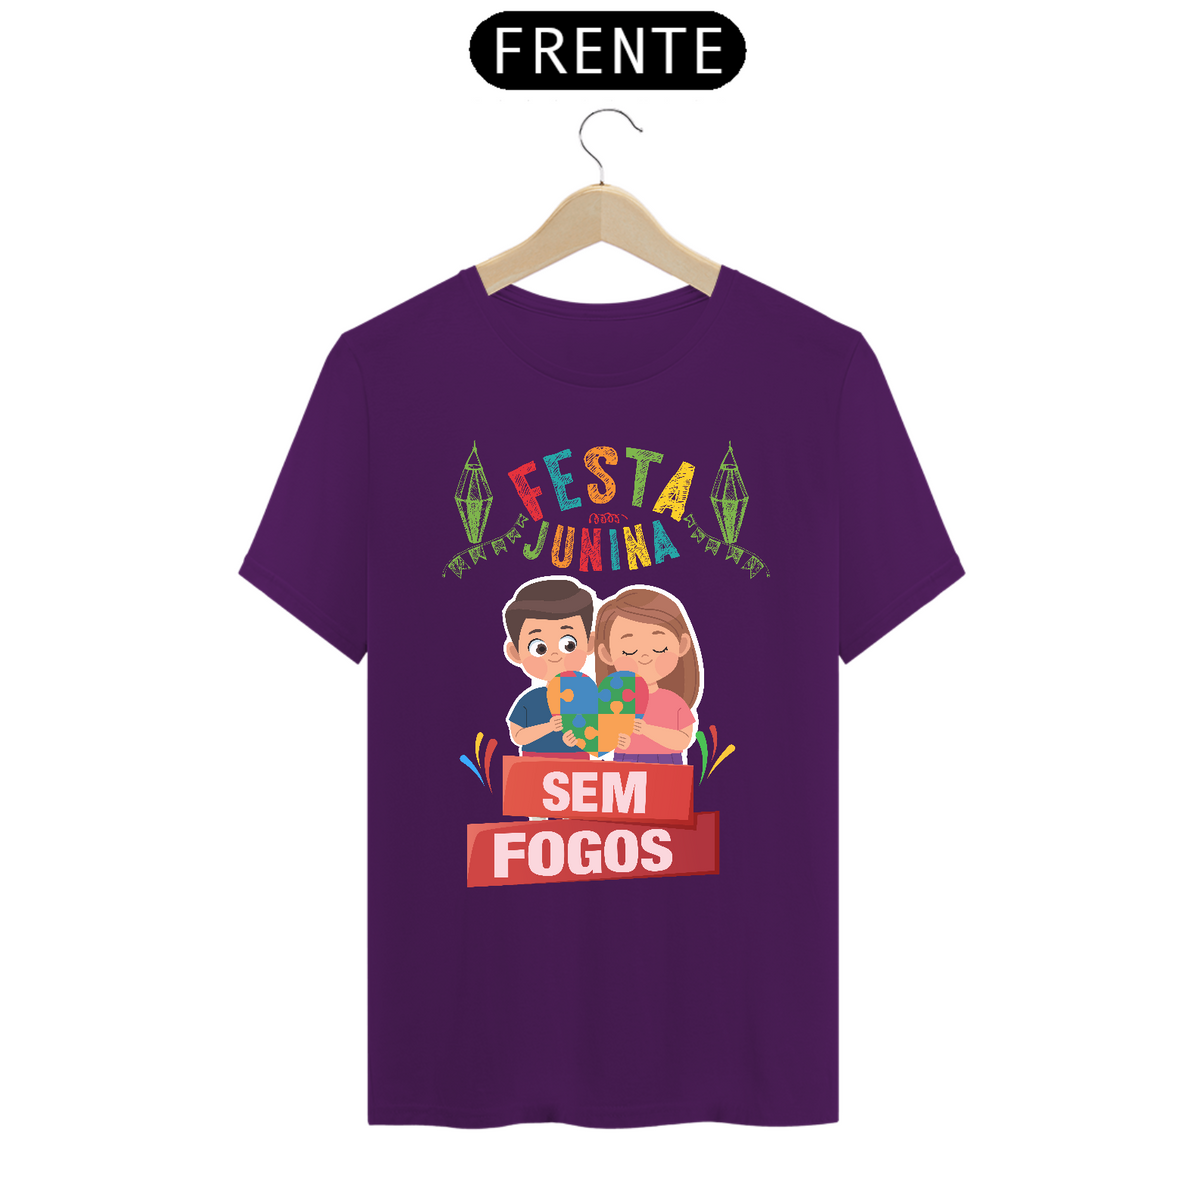 Nome do produto: T-shirt - autismo (festa junina sem fogos)